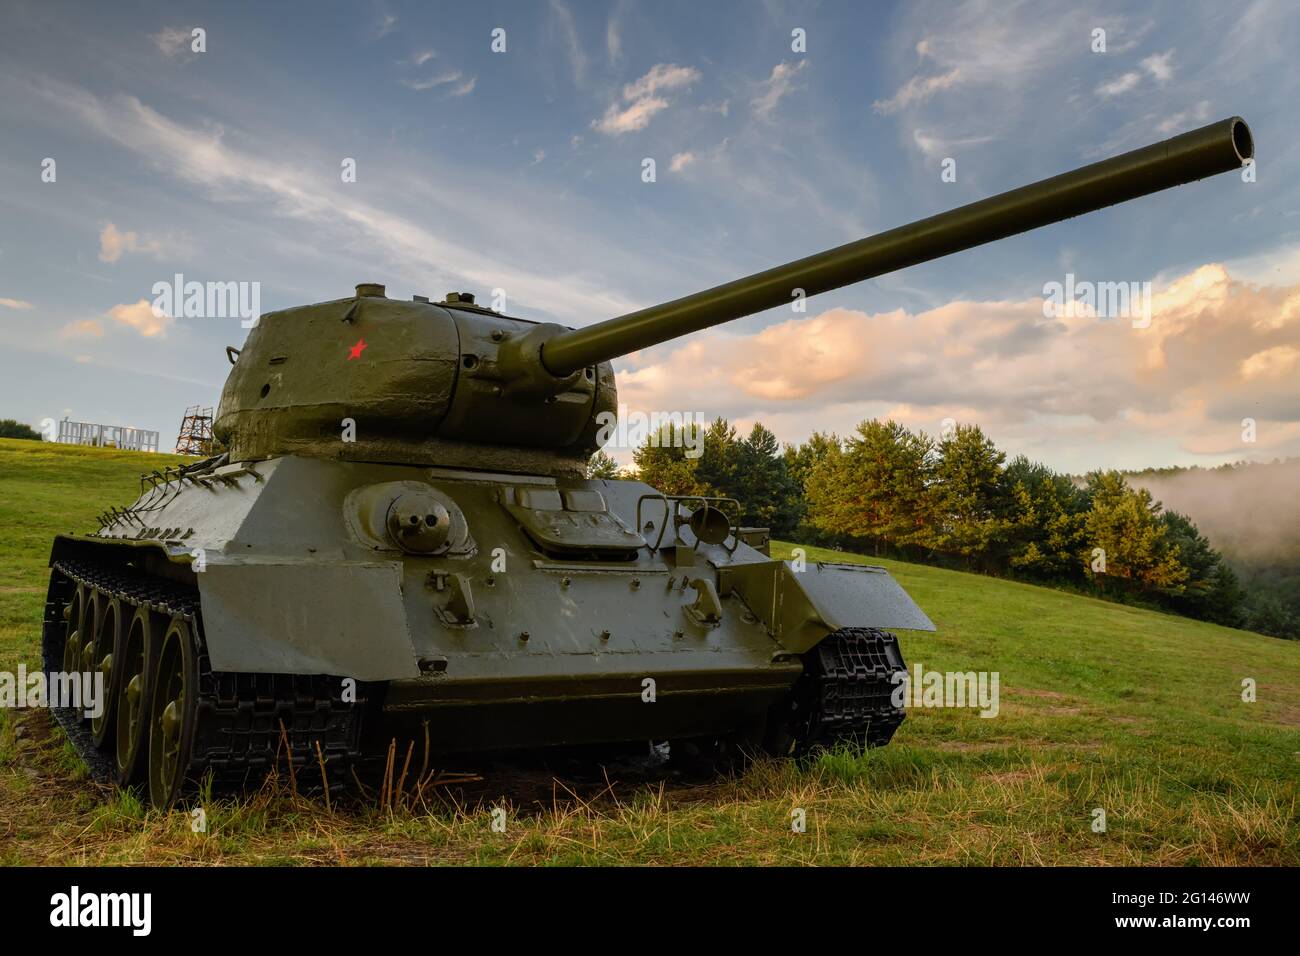 Sowjetischer mittlerer Panzer T-34 85 im Tal des Todes (Udolie smrti) - Kriegsgebiet des Zweiten Weltkriegs (Schlacht am Dukla-Pass). Slowakei - Region Svidnik. Stockfoto